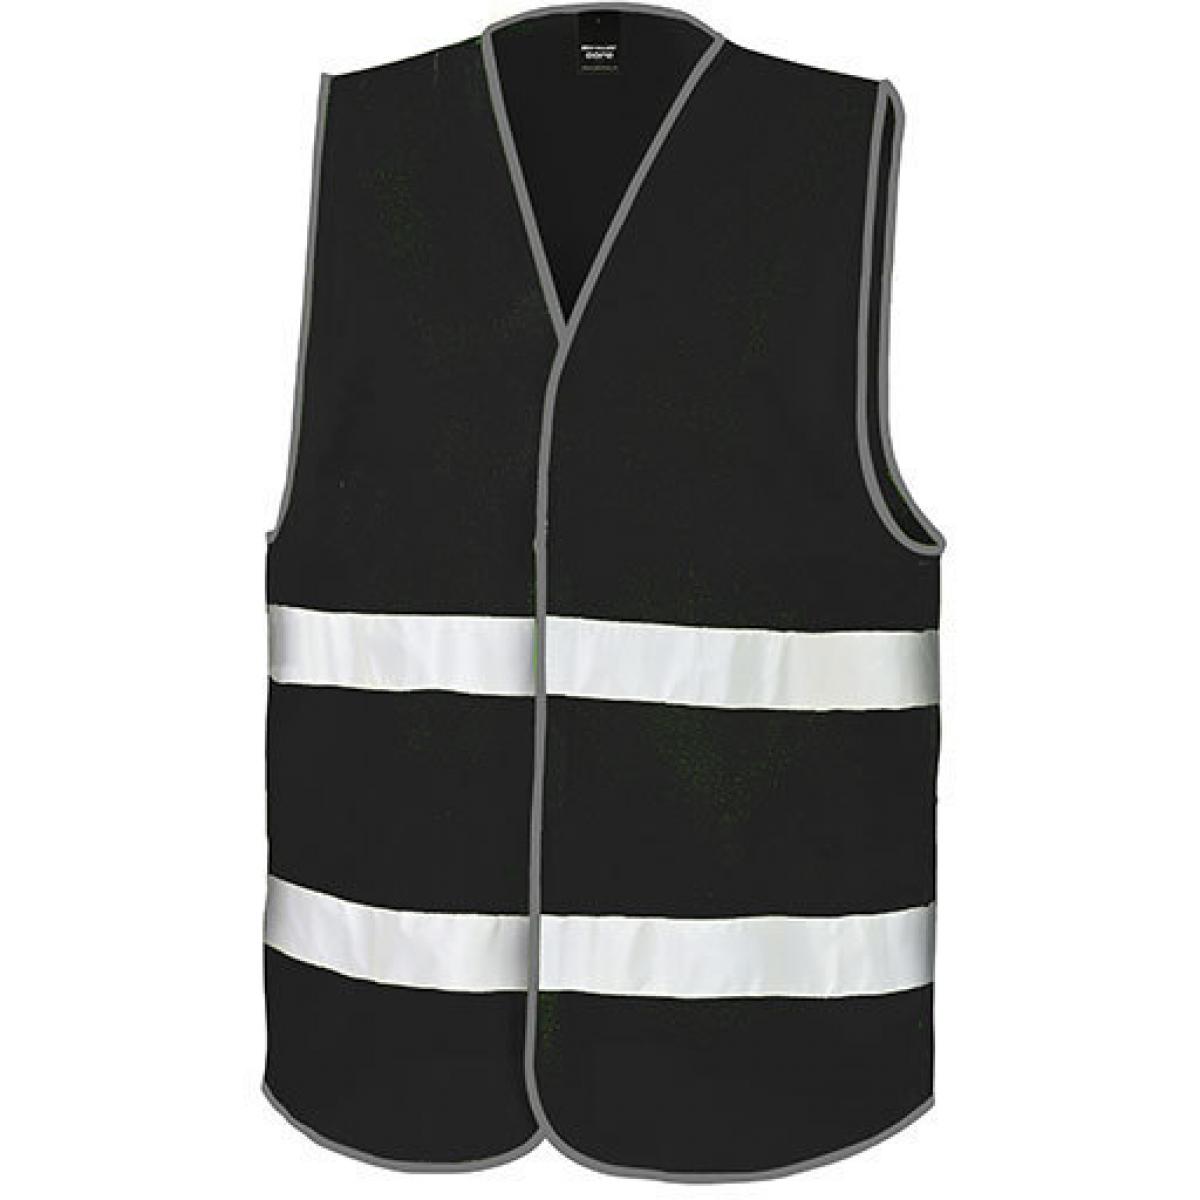 Hersteller: Result Core Herstellernummer: R200X Artikelbezeichnung: Motorist Safety Vest / ISOEN20471:2013, Klasse 2 Farbe: Black